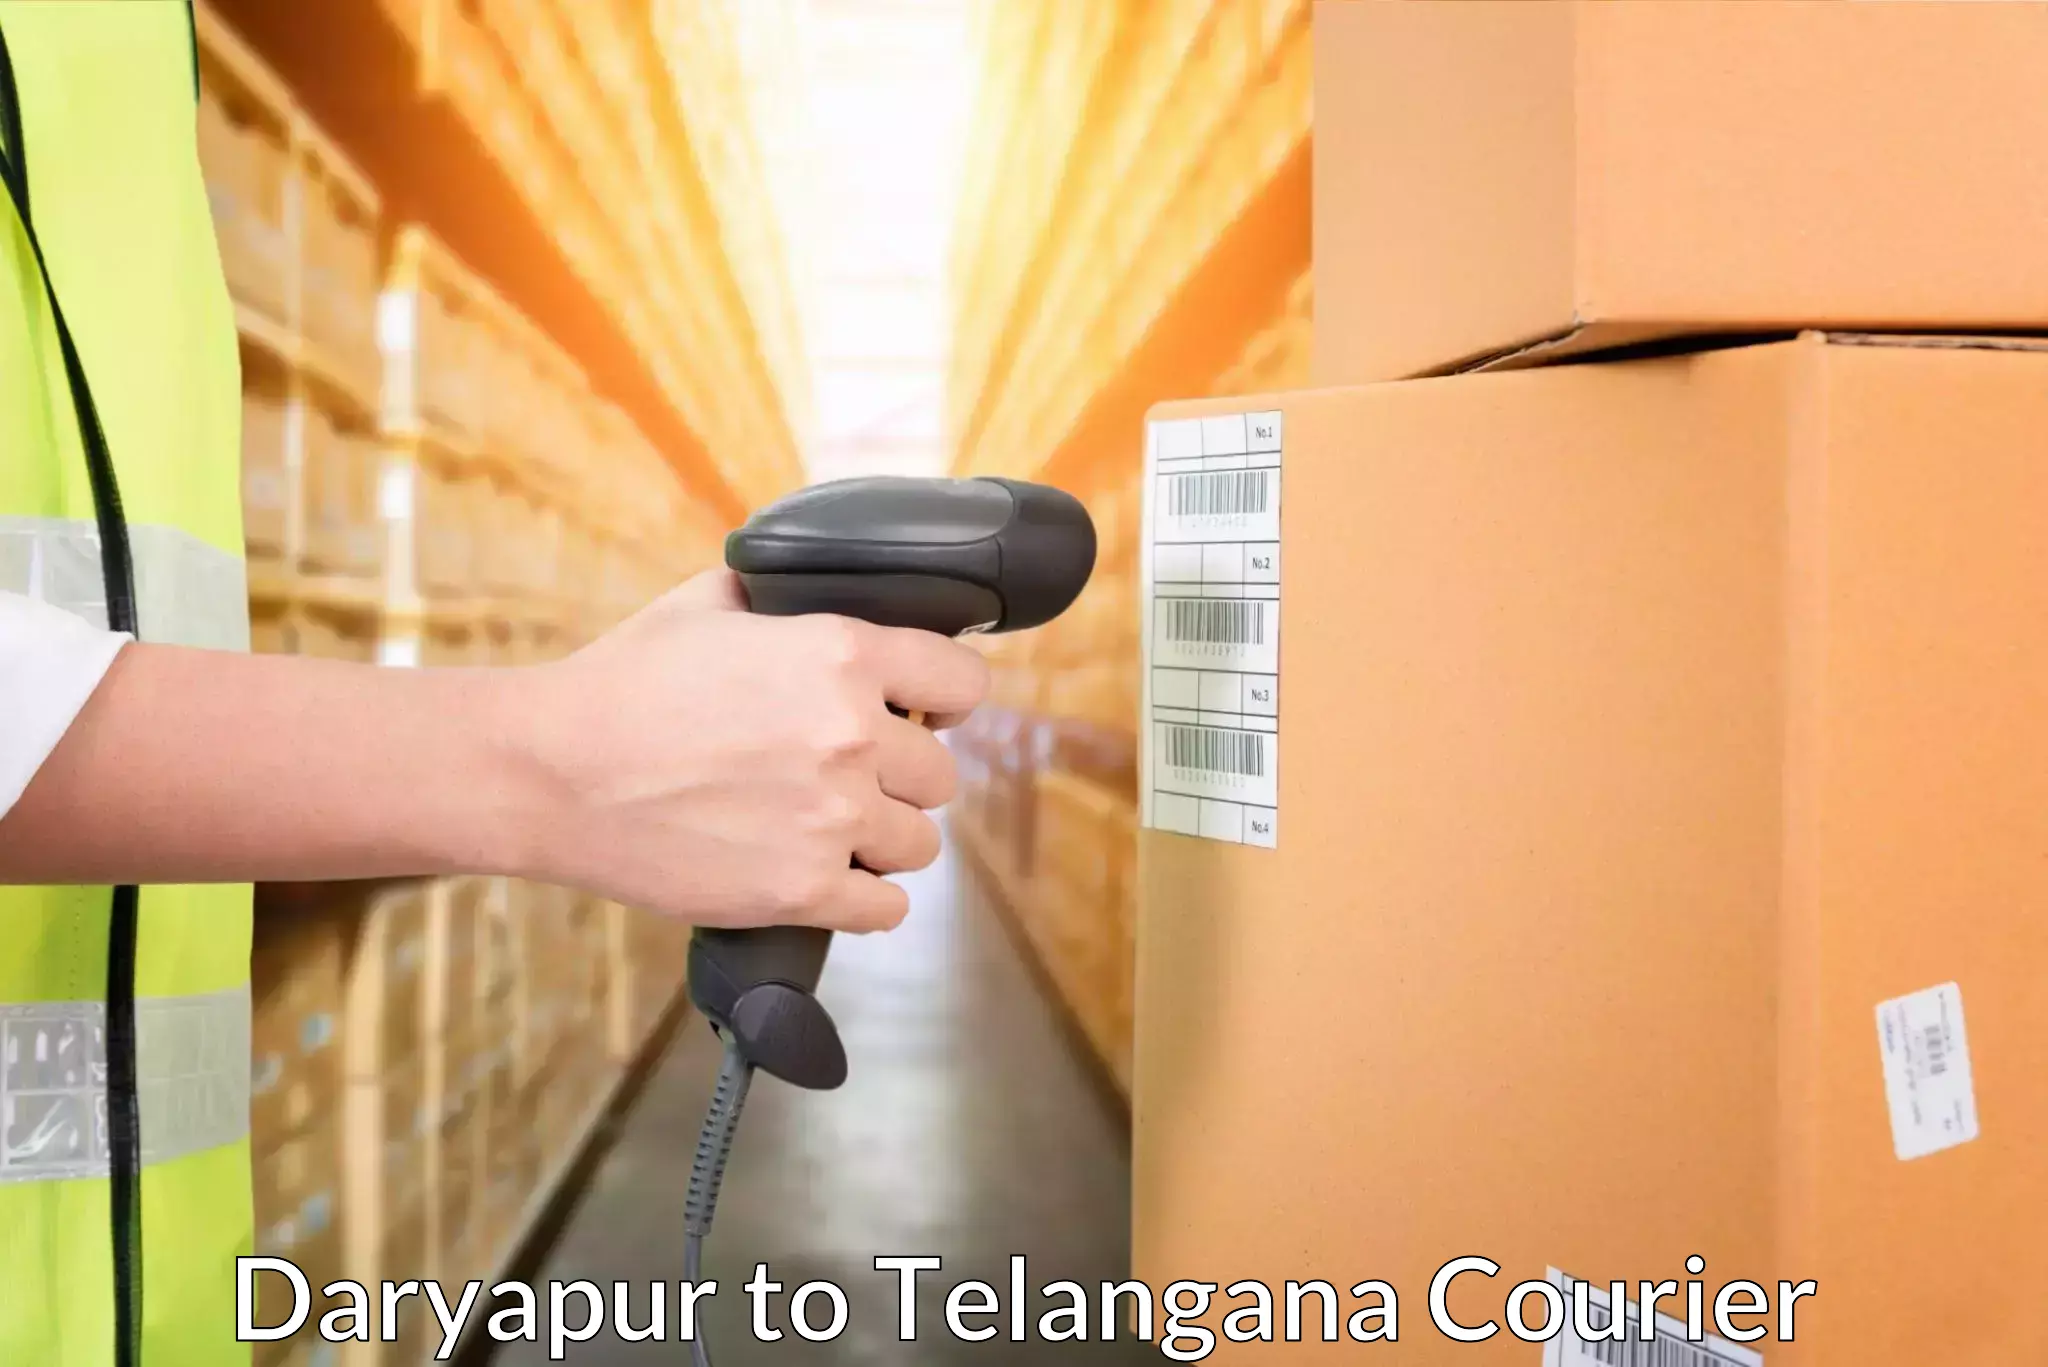 Quality courier partnerships Daryapur to Yerrupalem